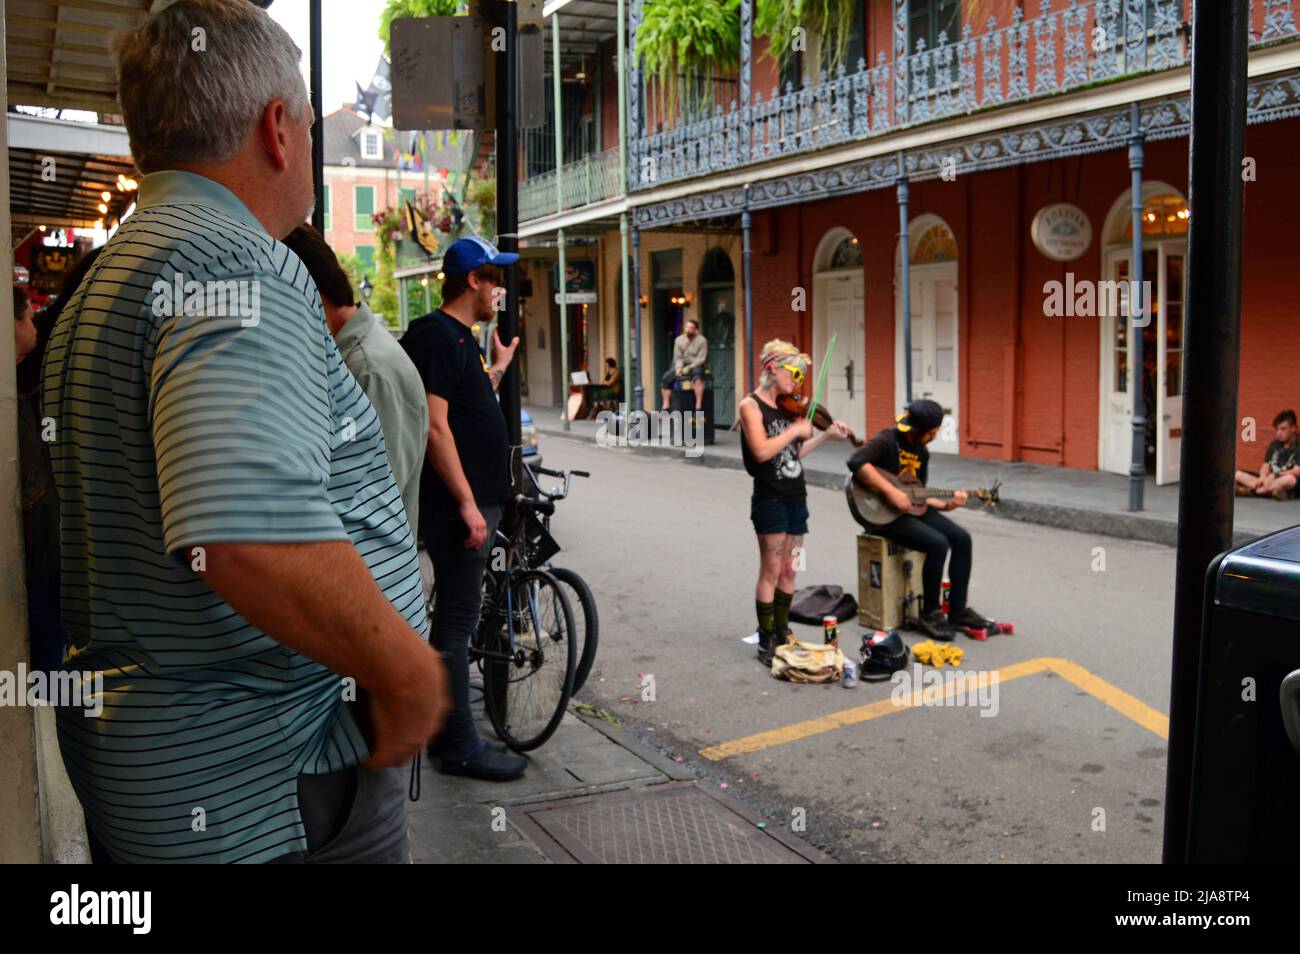 Un homme adulte regarde un duo musical dans les rues du quartier français de la Nouvelle-Orléans Banque D'Images